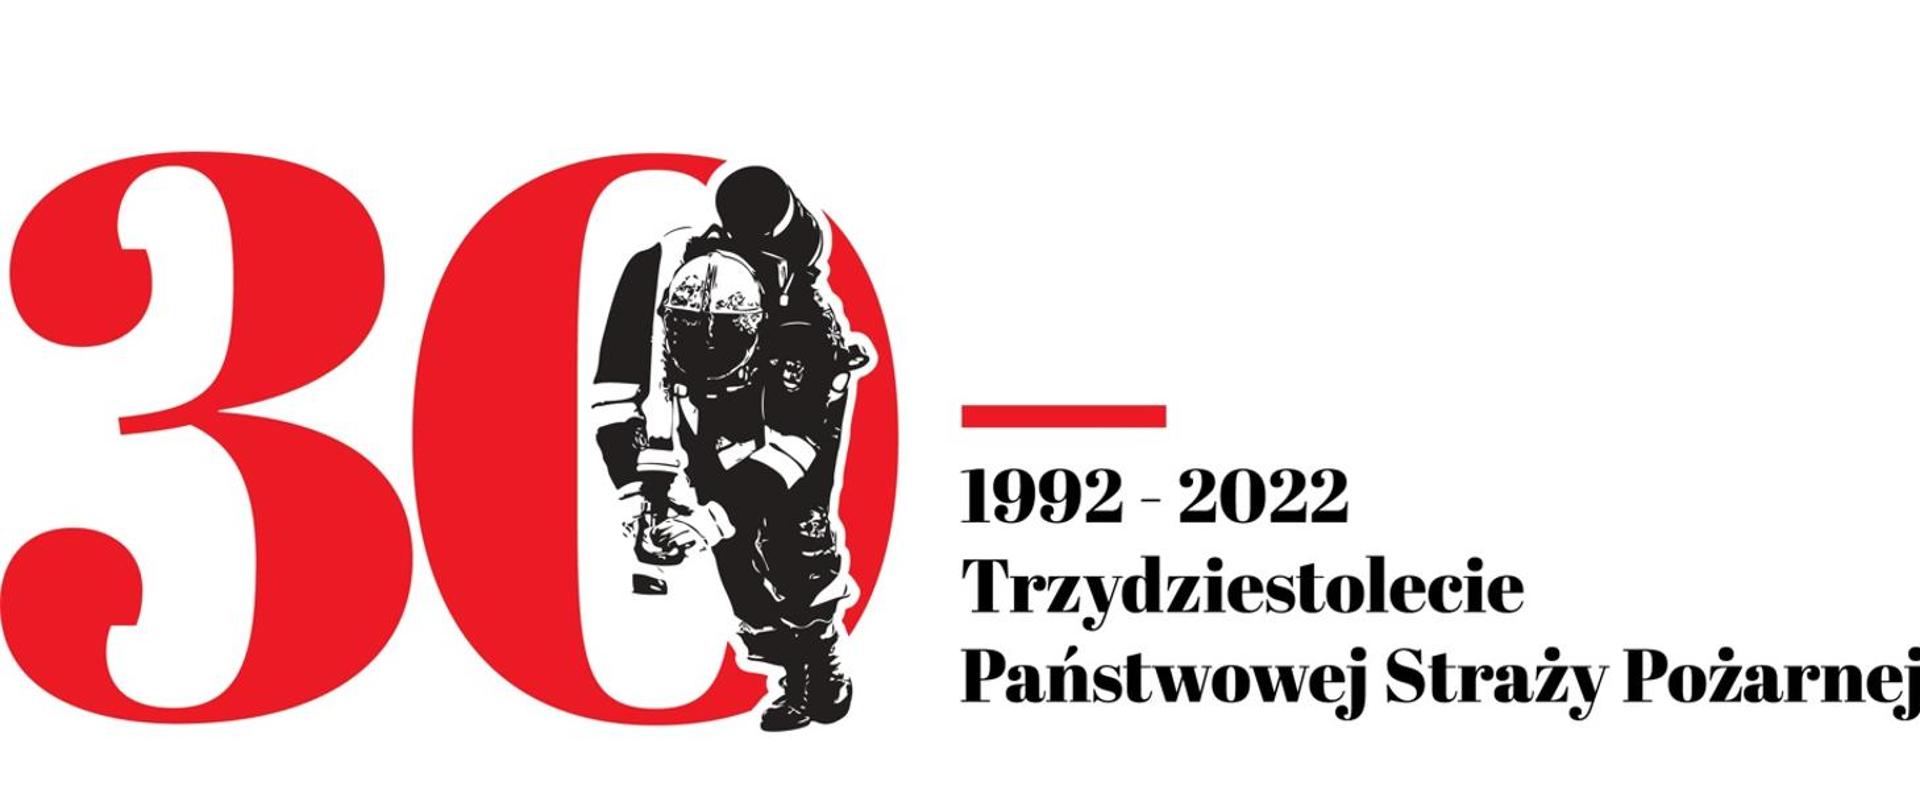 Obraz przedstawia przedstawia logo 30-lecia Państwowej Straży Pożarnej. Z lewej strony liczba 30 w wrysowany w nią strażak w umundurowaniu specjalnym i aparacie ODO ciągnący wąż pożarniczy. Z praeej strony napi 1992-2022 i poniżej Trzydziestolecie Państwowej Straży Pożarnej